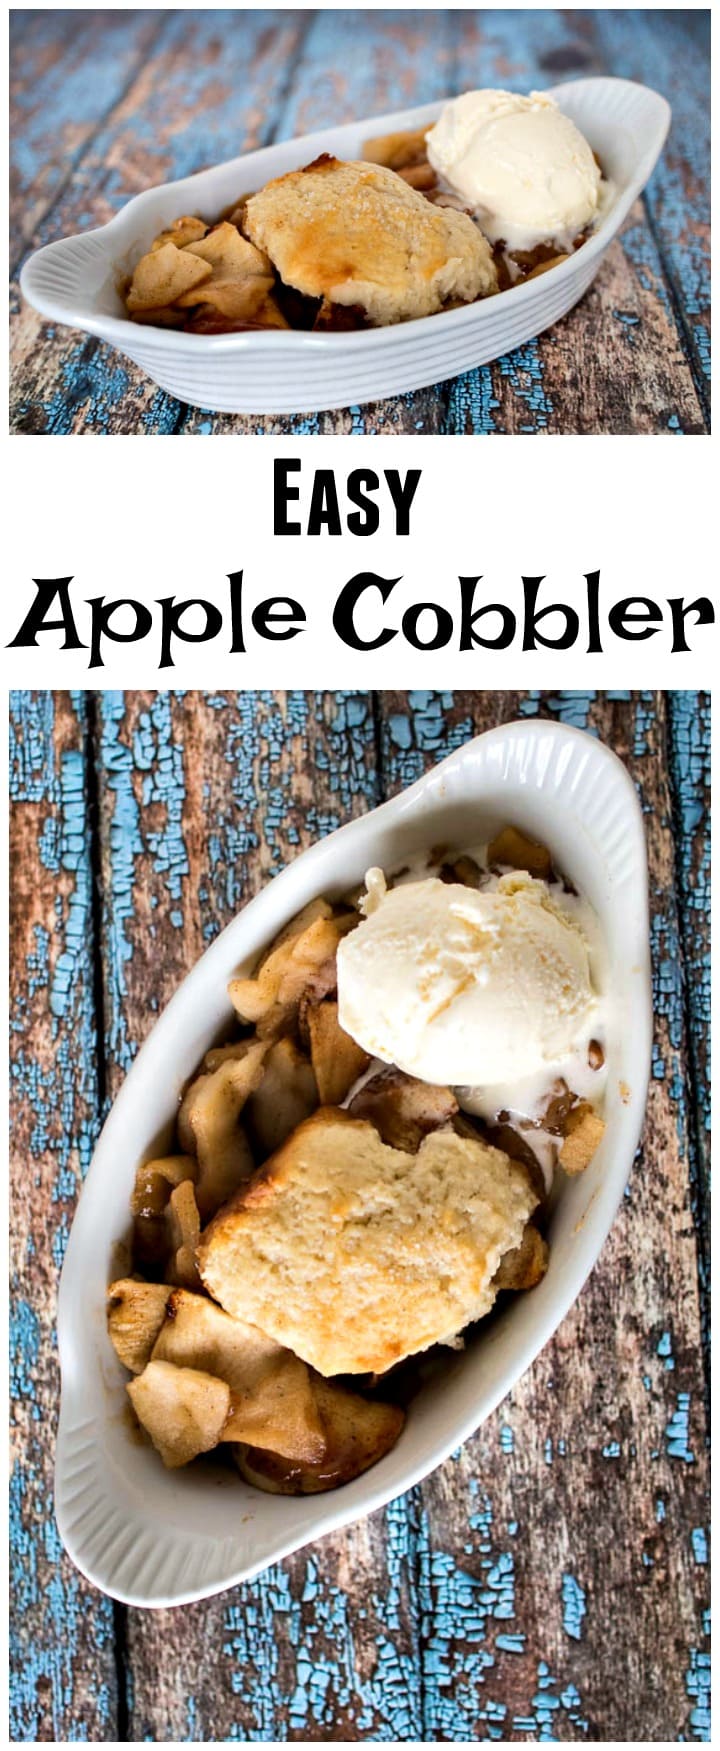 Easy Apple Cobbler Recipe | Apple Cobbler from Scratch | Homemade Apple Cobbler | Southern Apple Cobbler